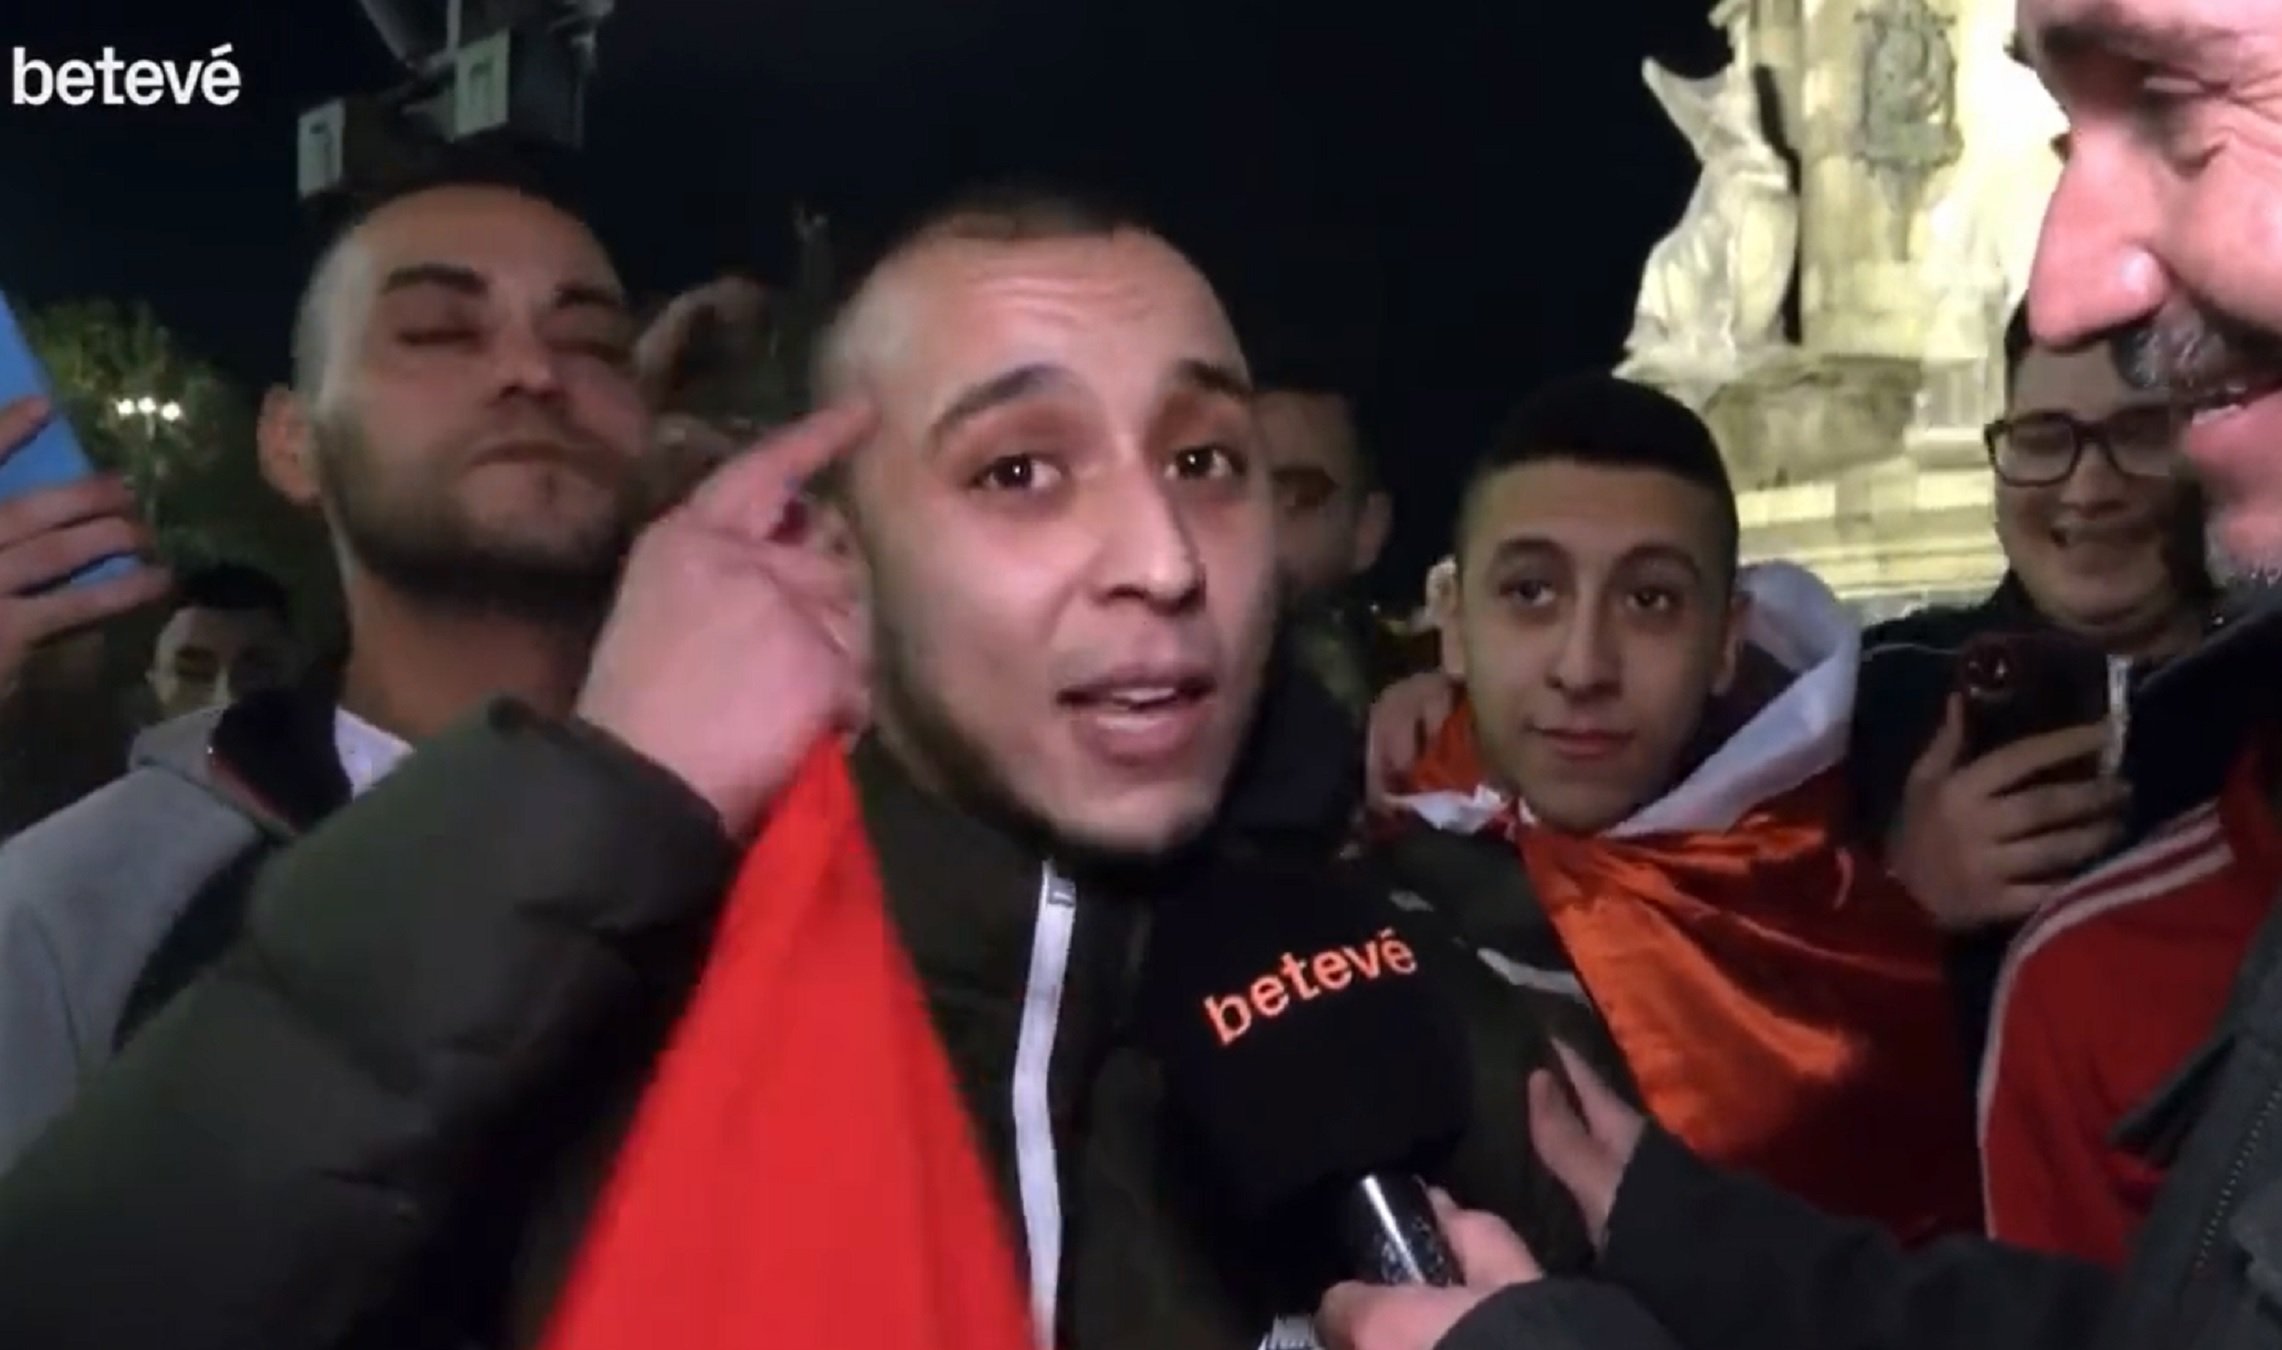 Un noi marroquí fa bullir l'olla a Twitter amb un català que ni Pompeu Fabra | VÍDEO